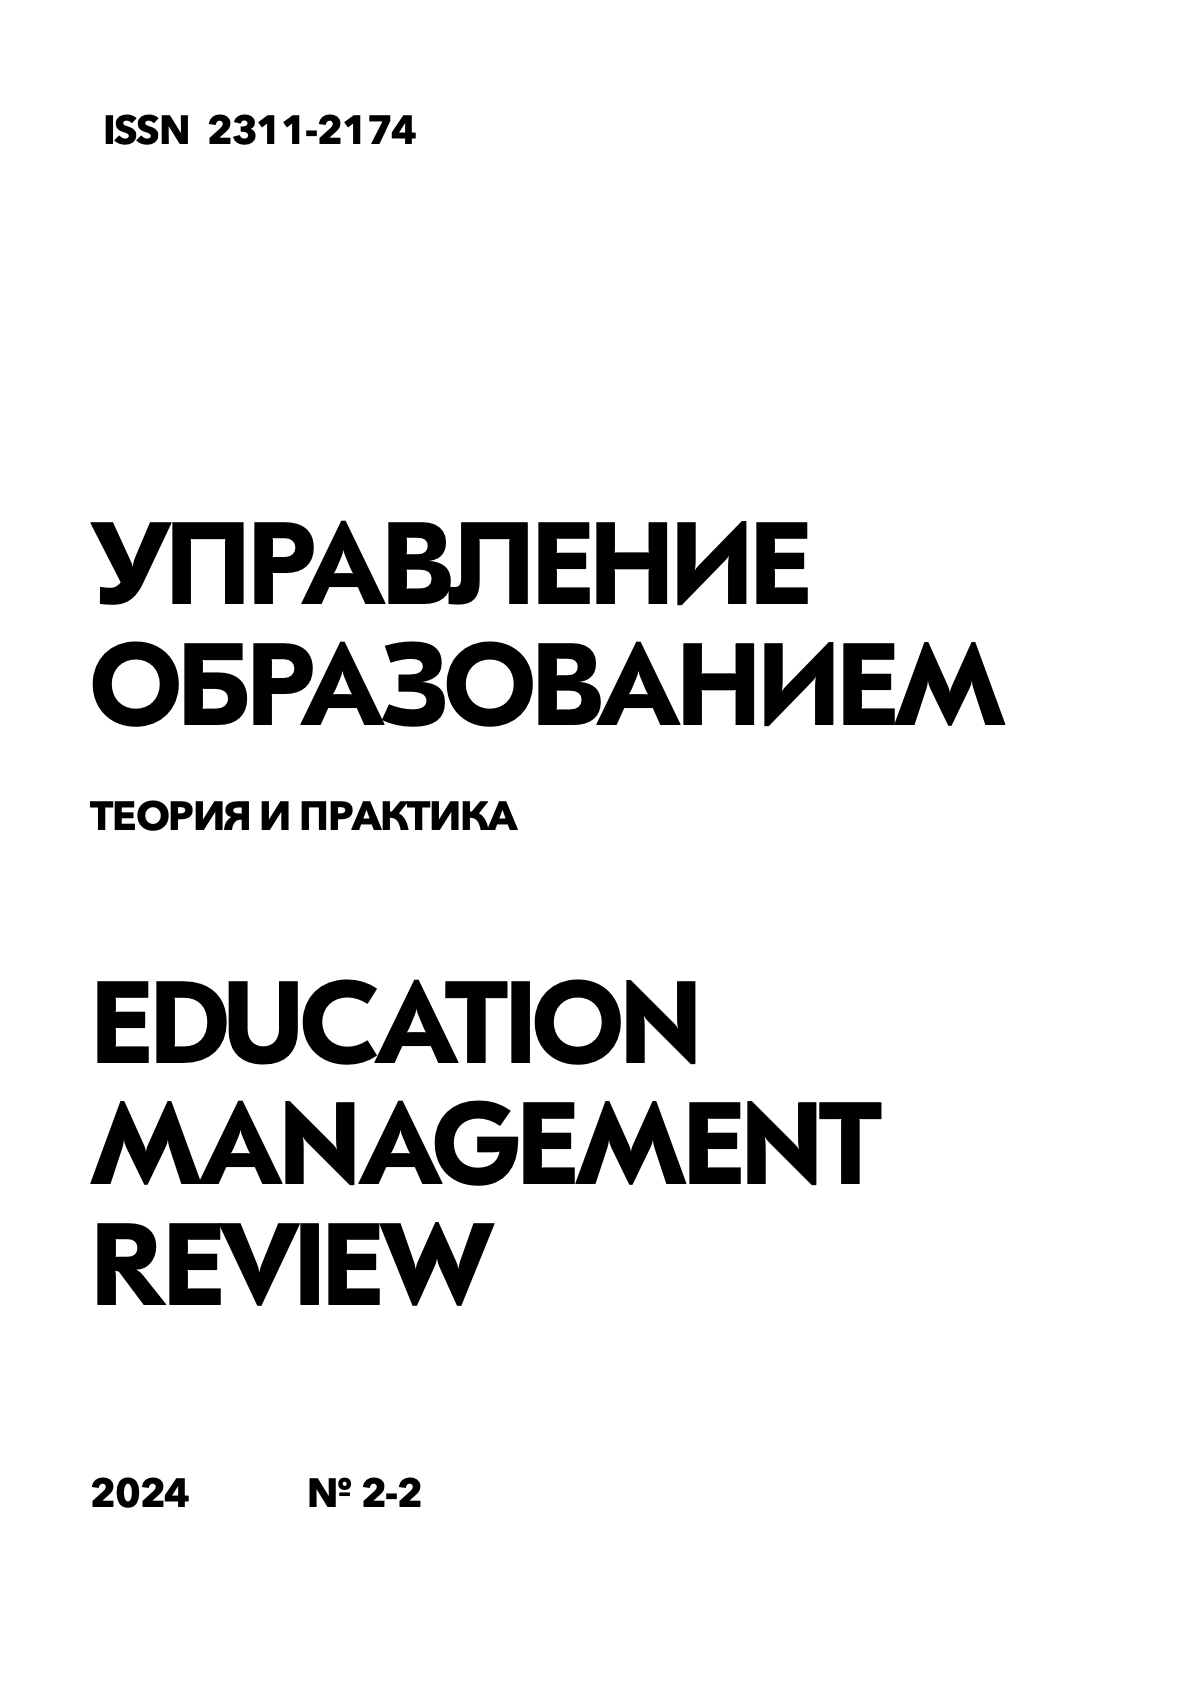 					View Vol. 14 No. 2-2 (2024): Education management review
				